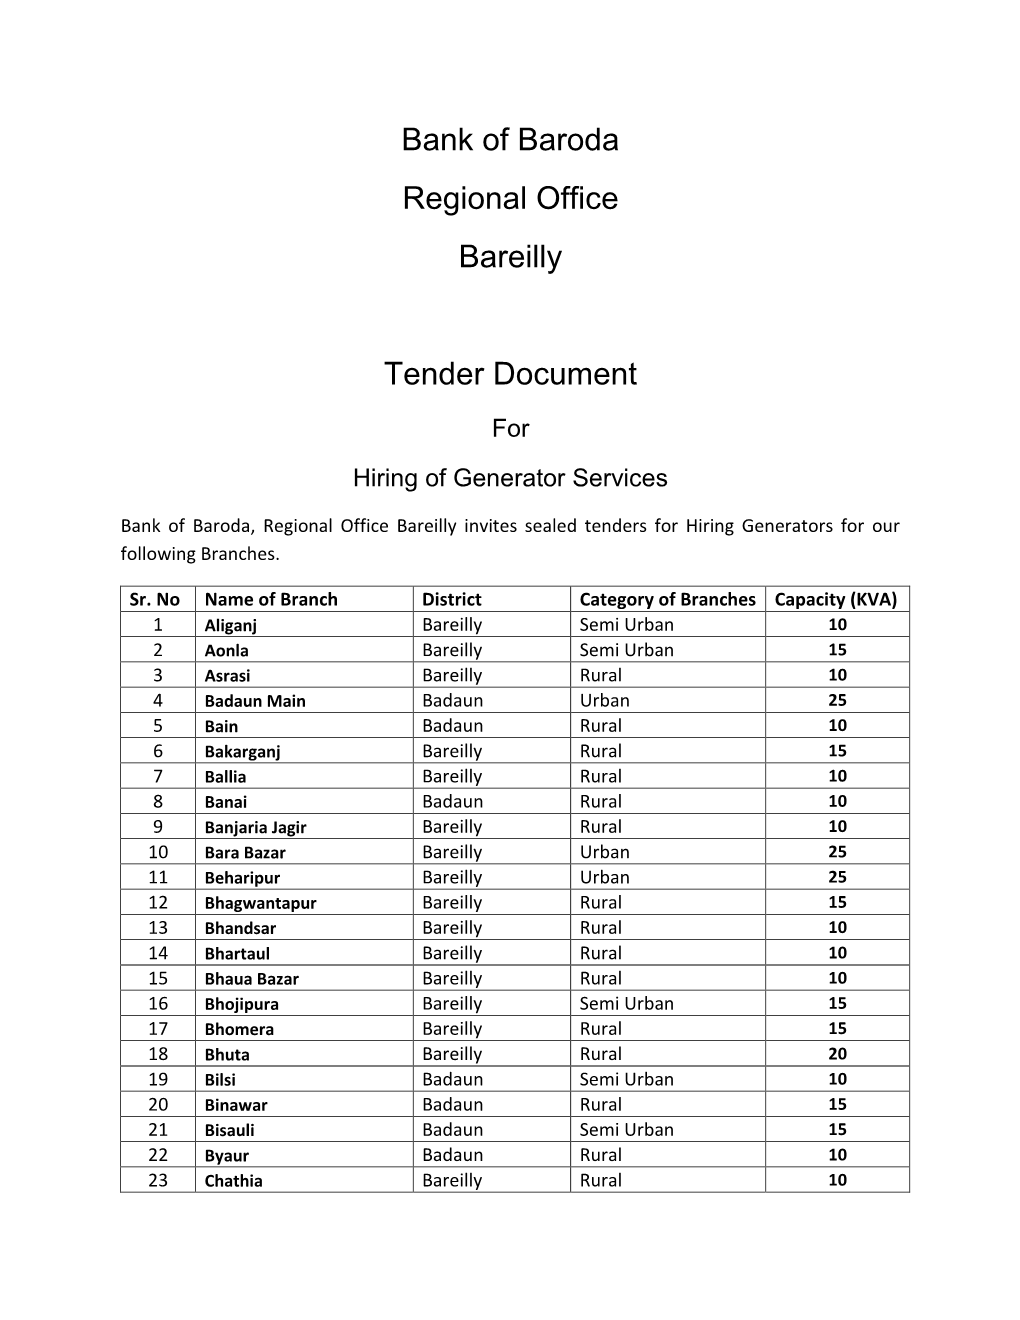 Bank of Baroda Regional Office Bareilly Tender Document